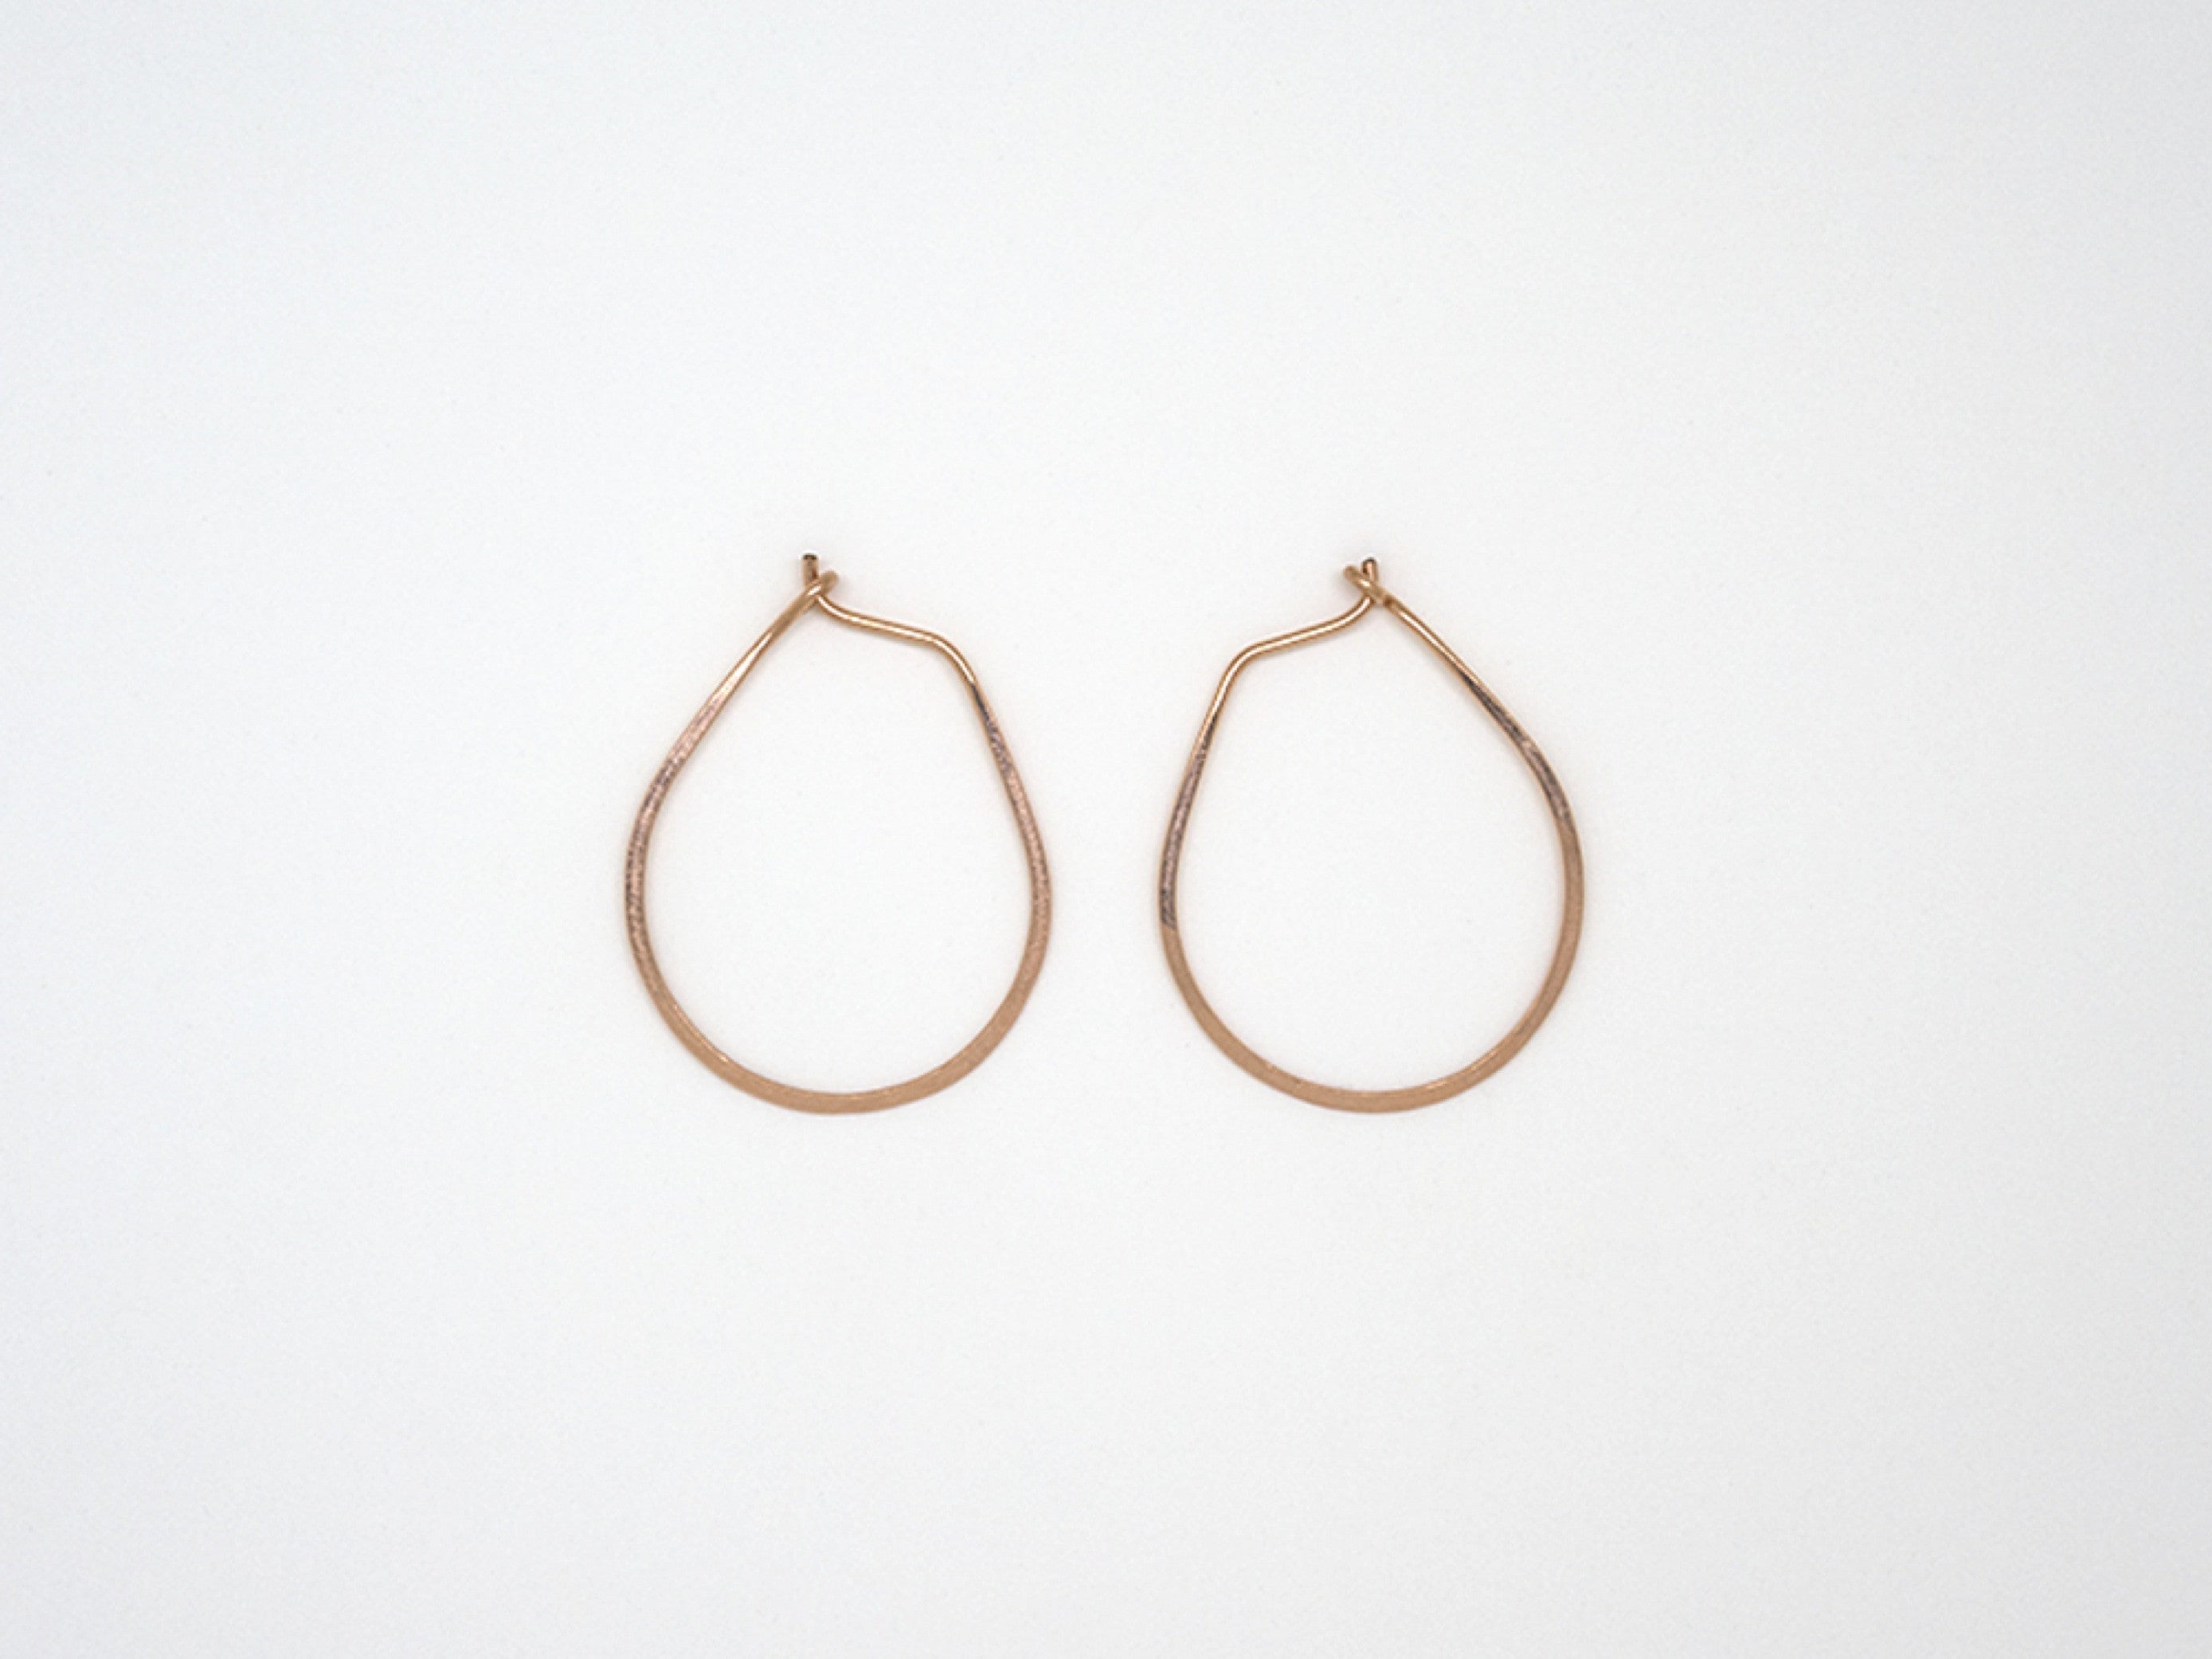 Small Rose Gold Teardrop Earrings - E1687